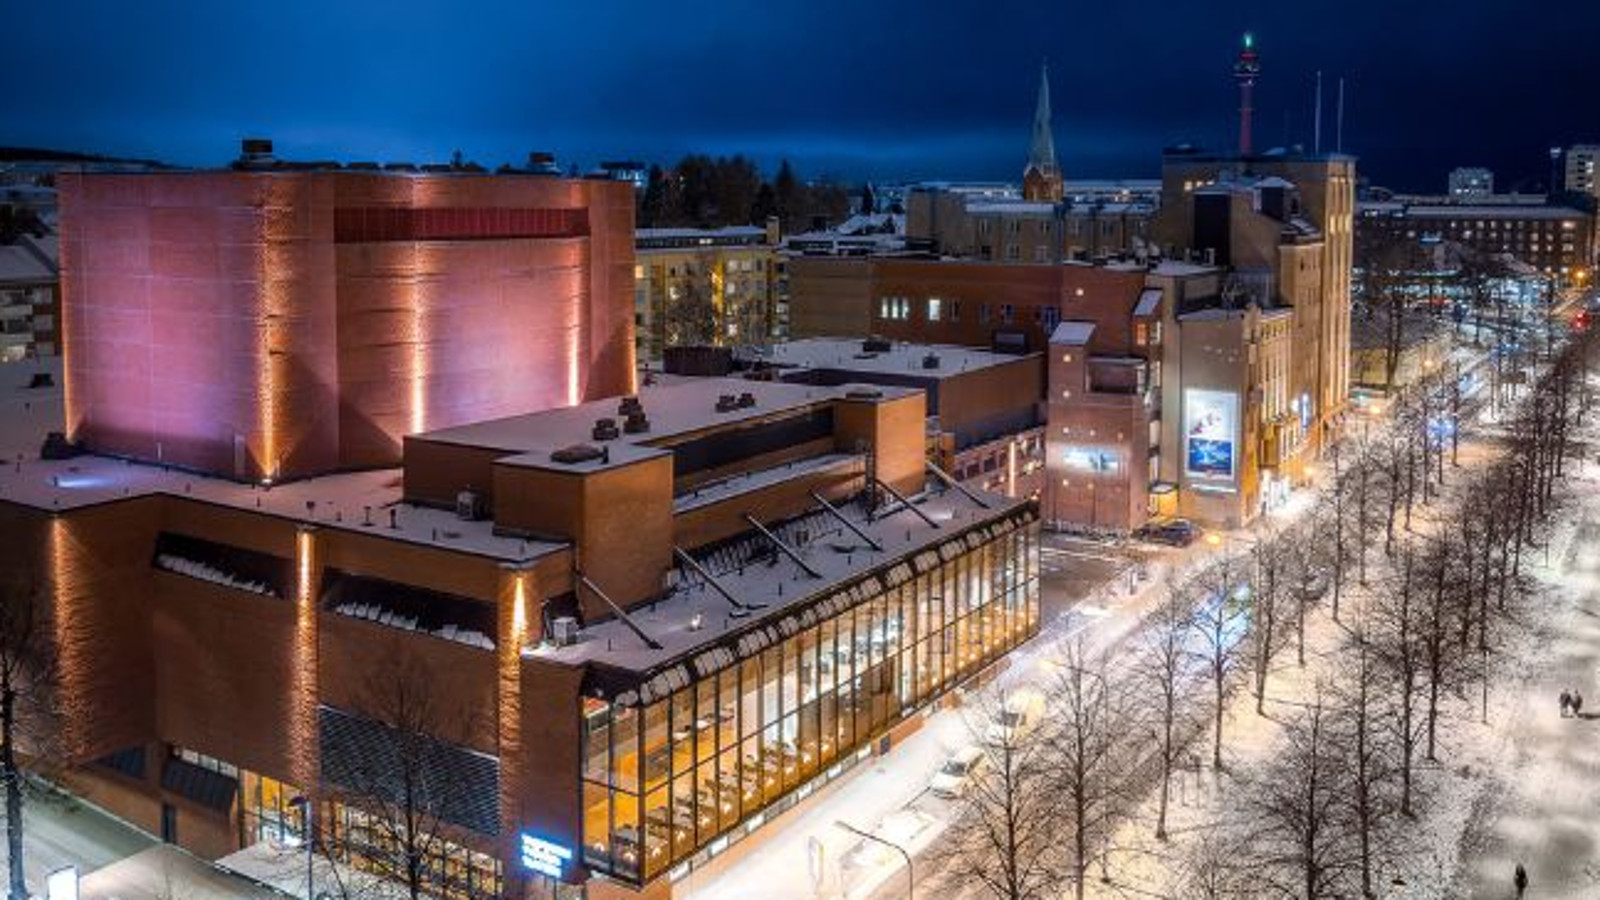 Kuvassa on Tampereen Työväen Teatterin punatiilinen rakennus ylhäältä päin kuvattauna iltavalaistuksessa.